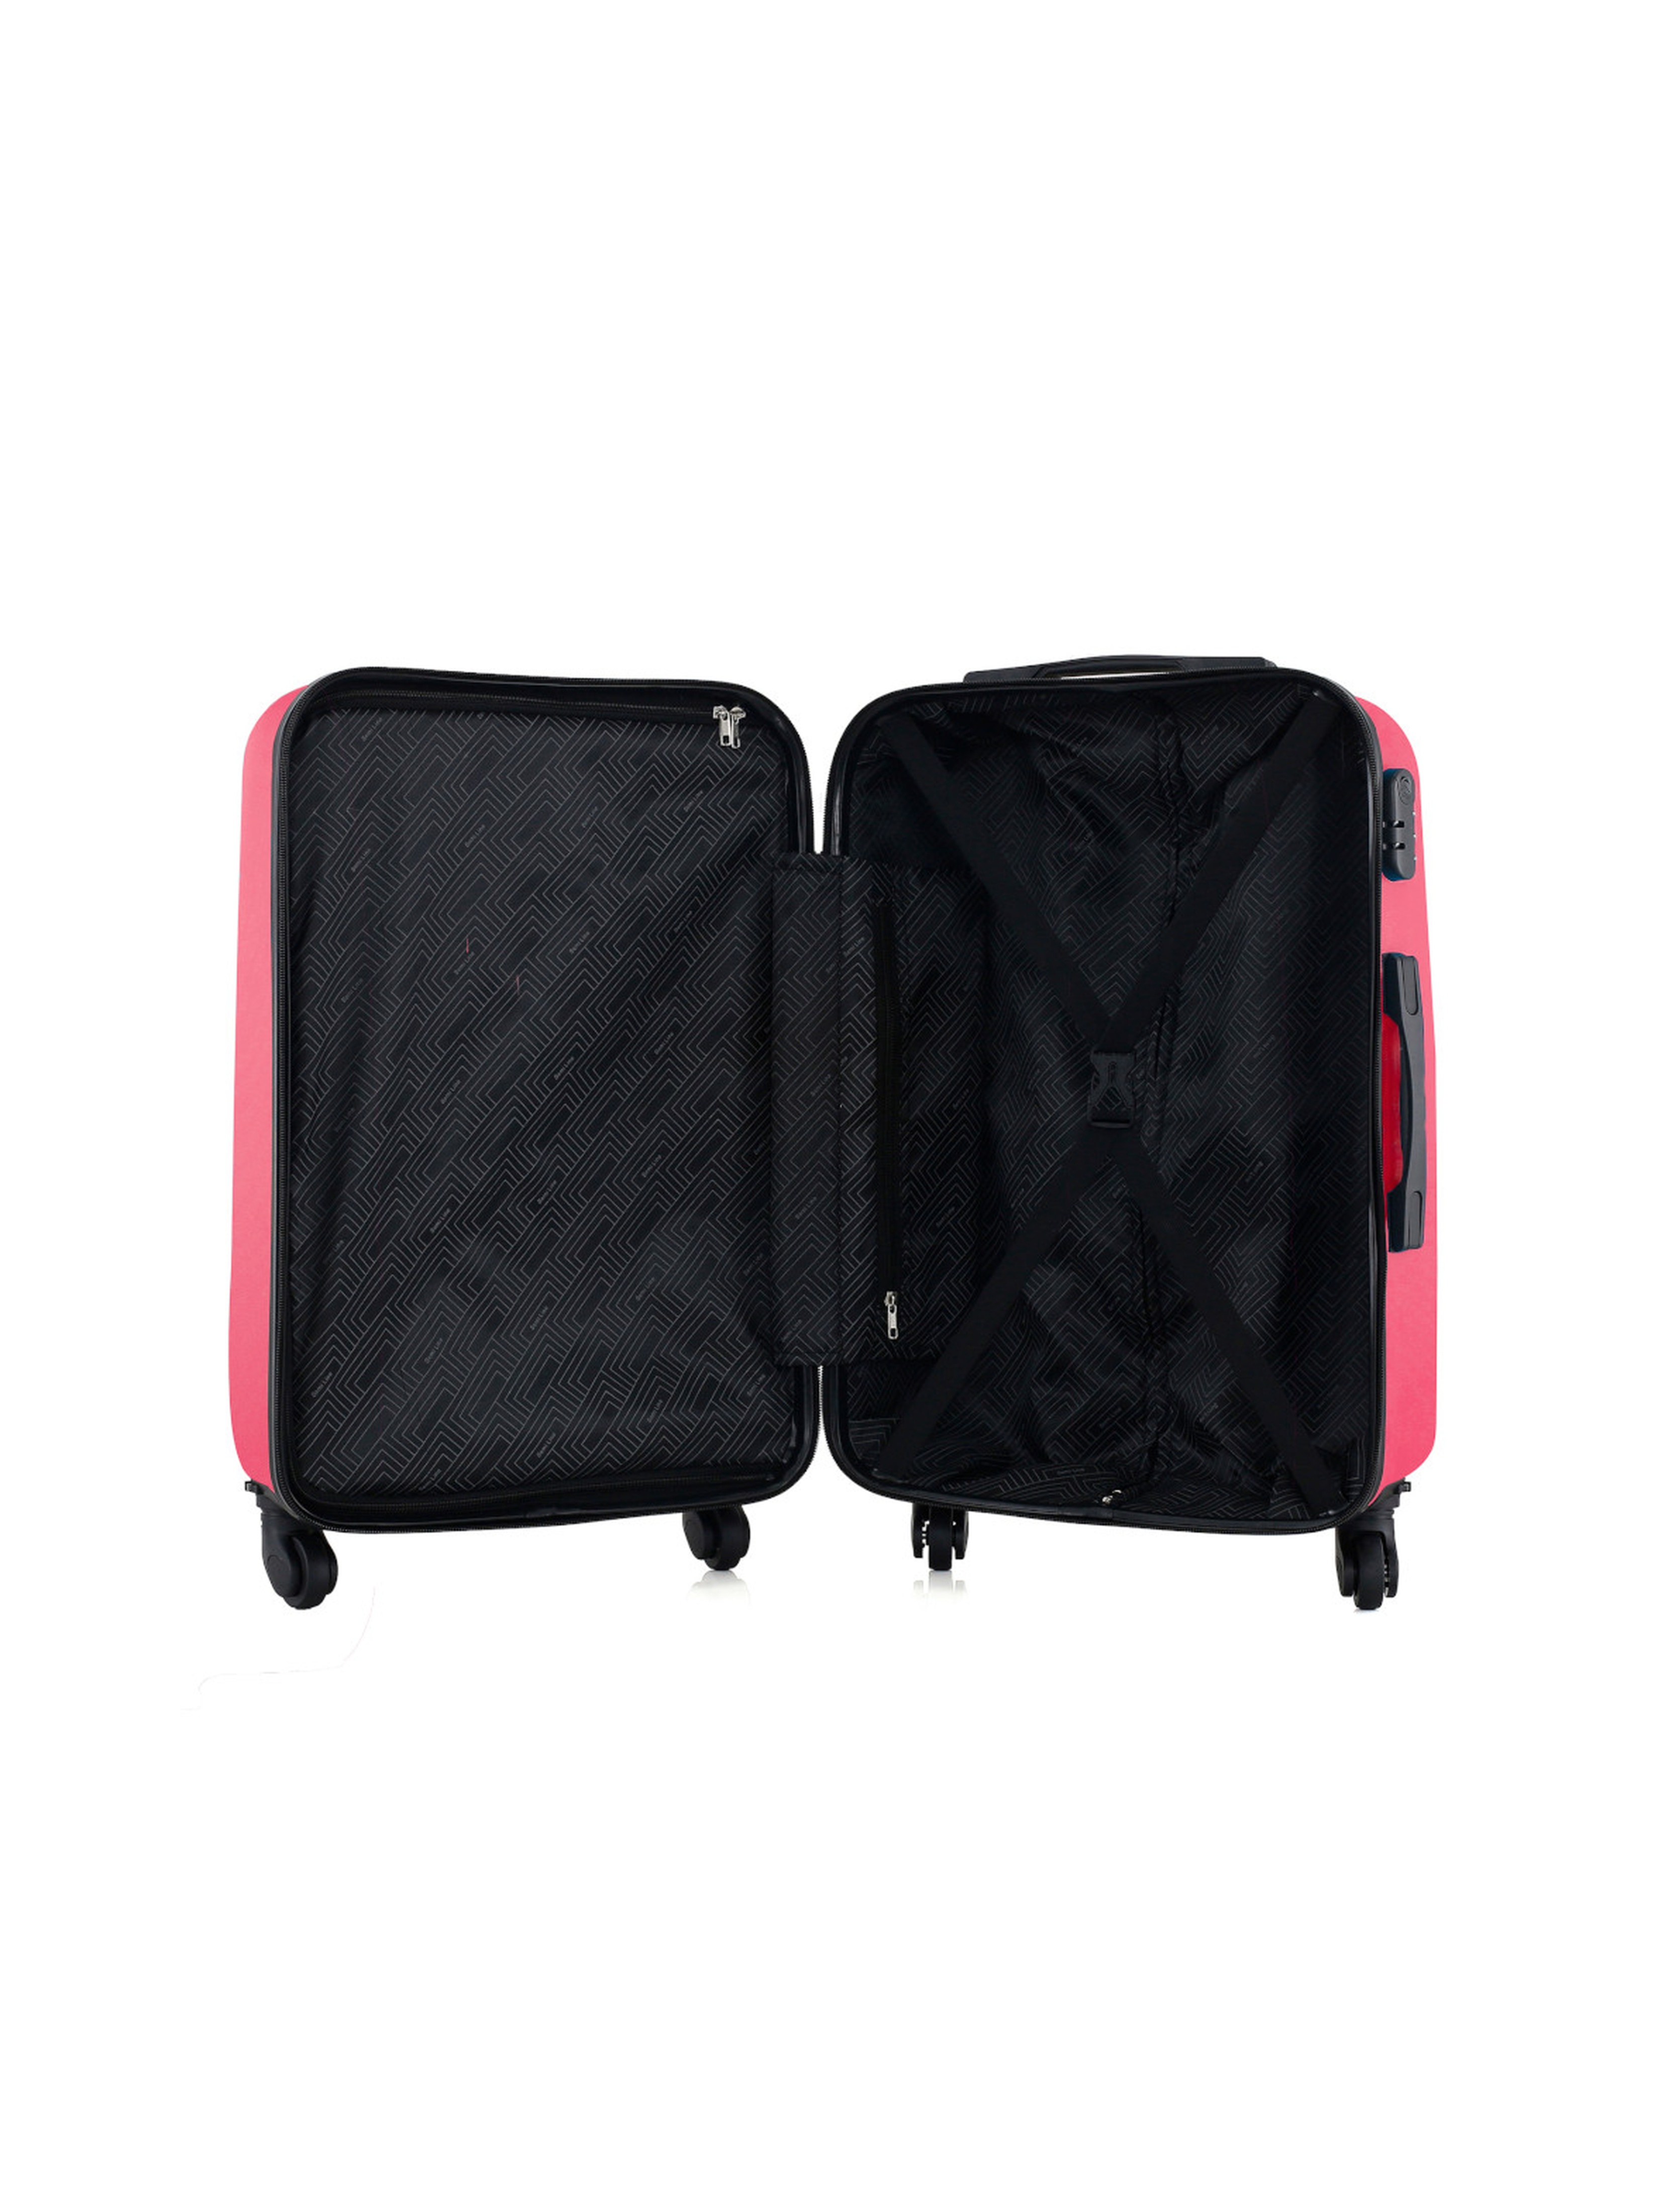 Duża twarda walizka (100 L) różowa - 75x48x33 cm